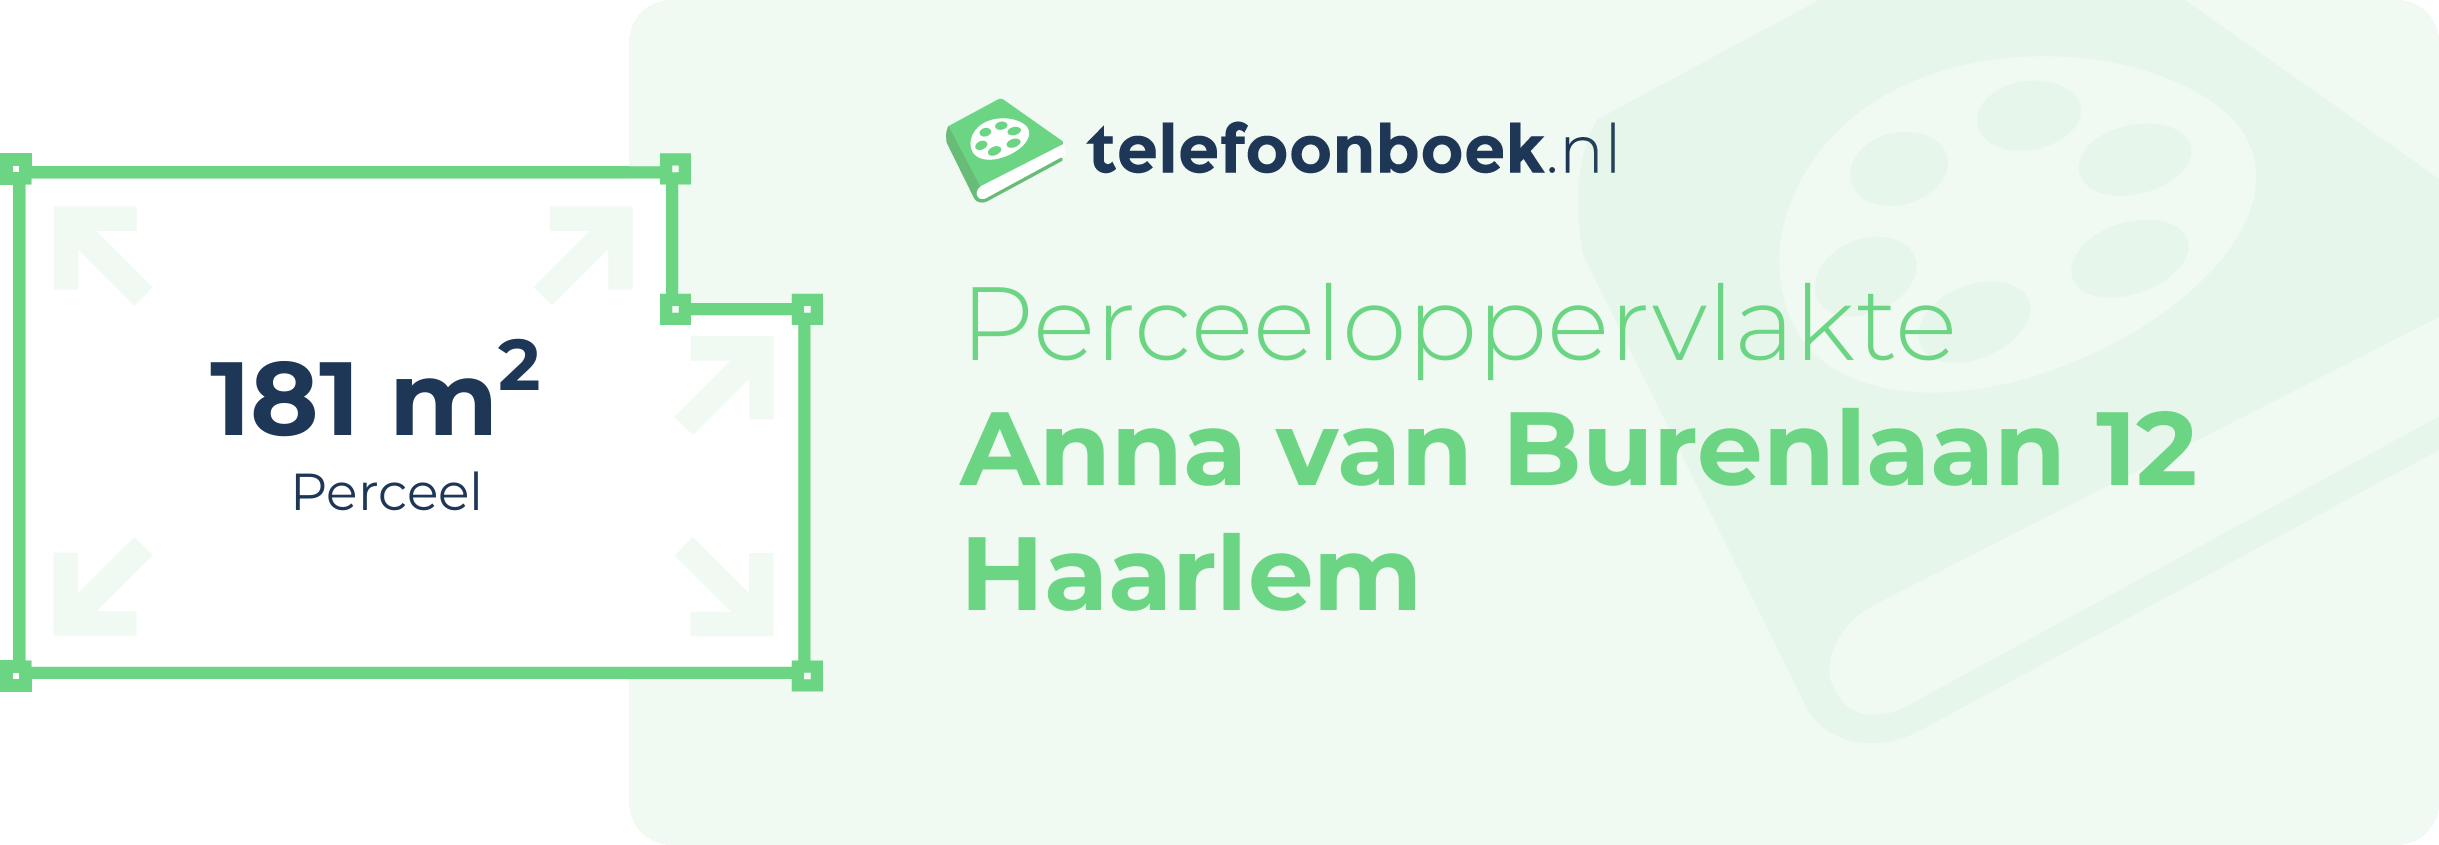 Perceeloppervlakte Anna Van Burenlaan 12 Haarlem